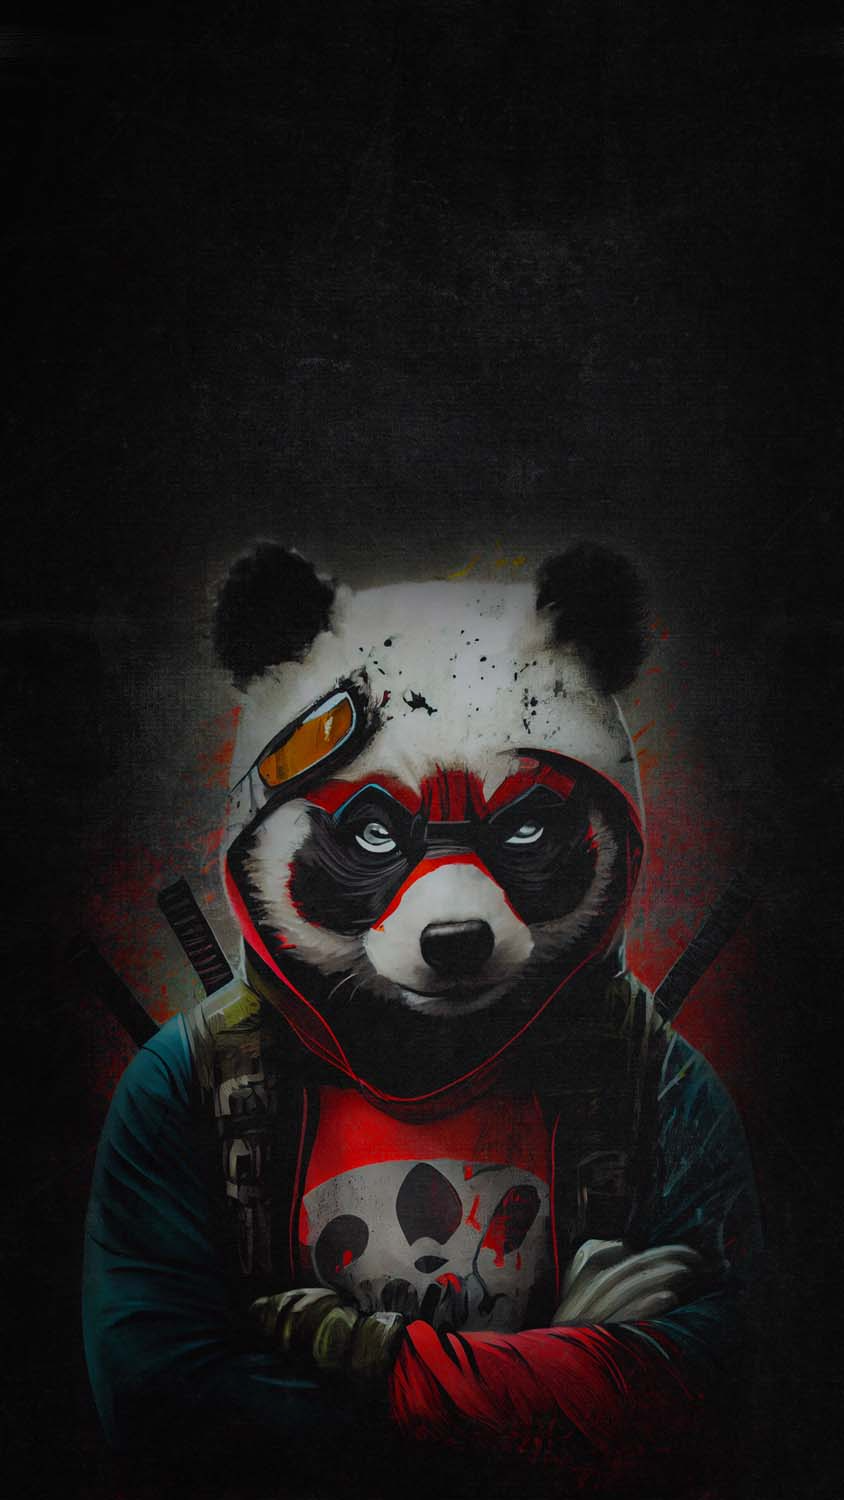 Cute Panda 4k wallpaper by Castropee  Download on ZEDGE  84f5